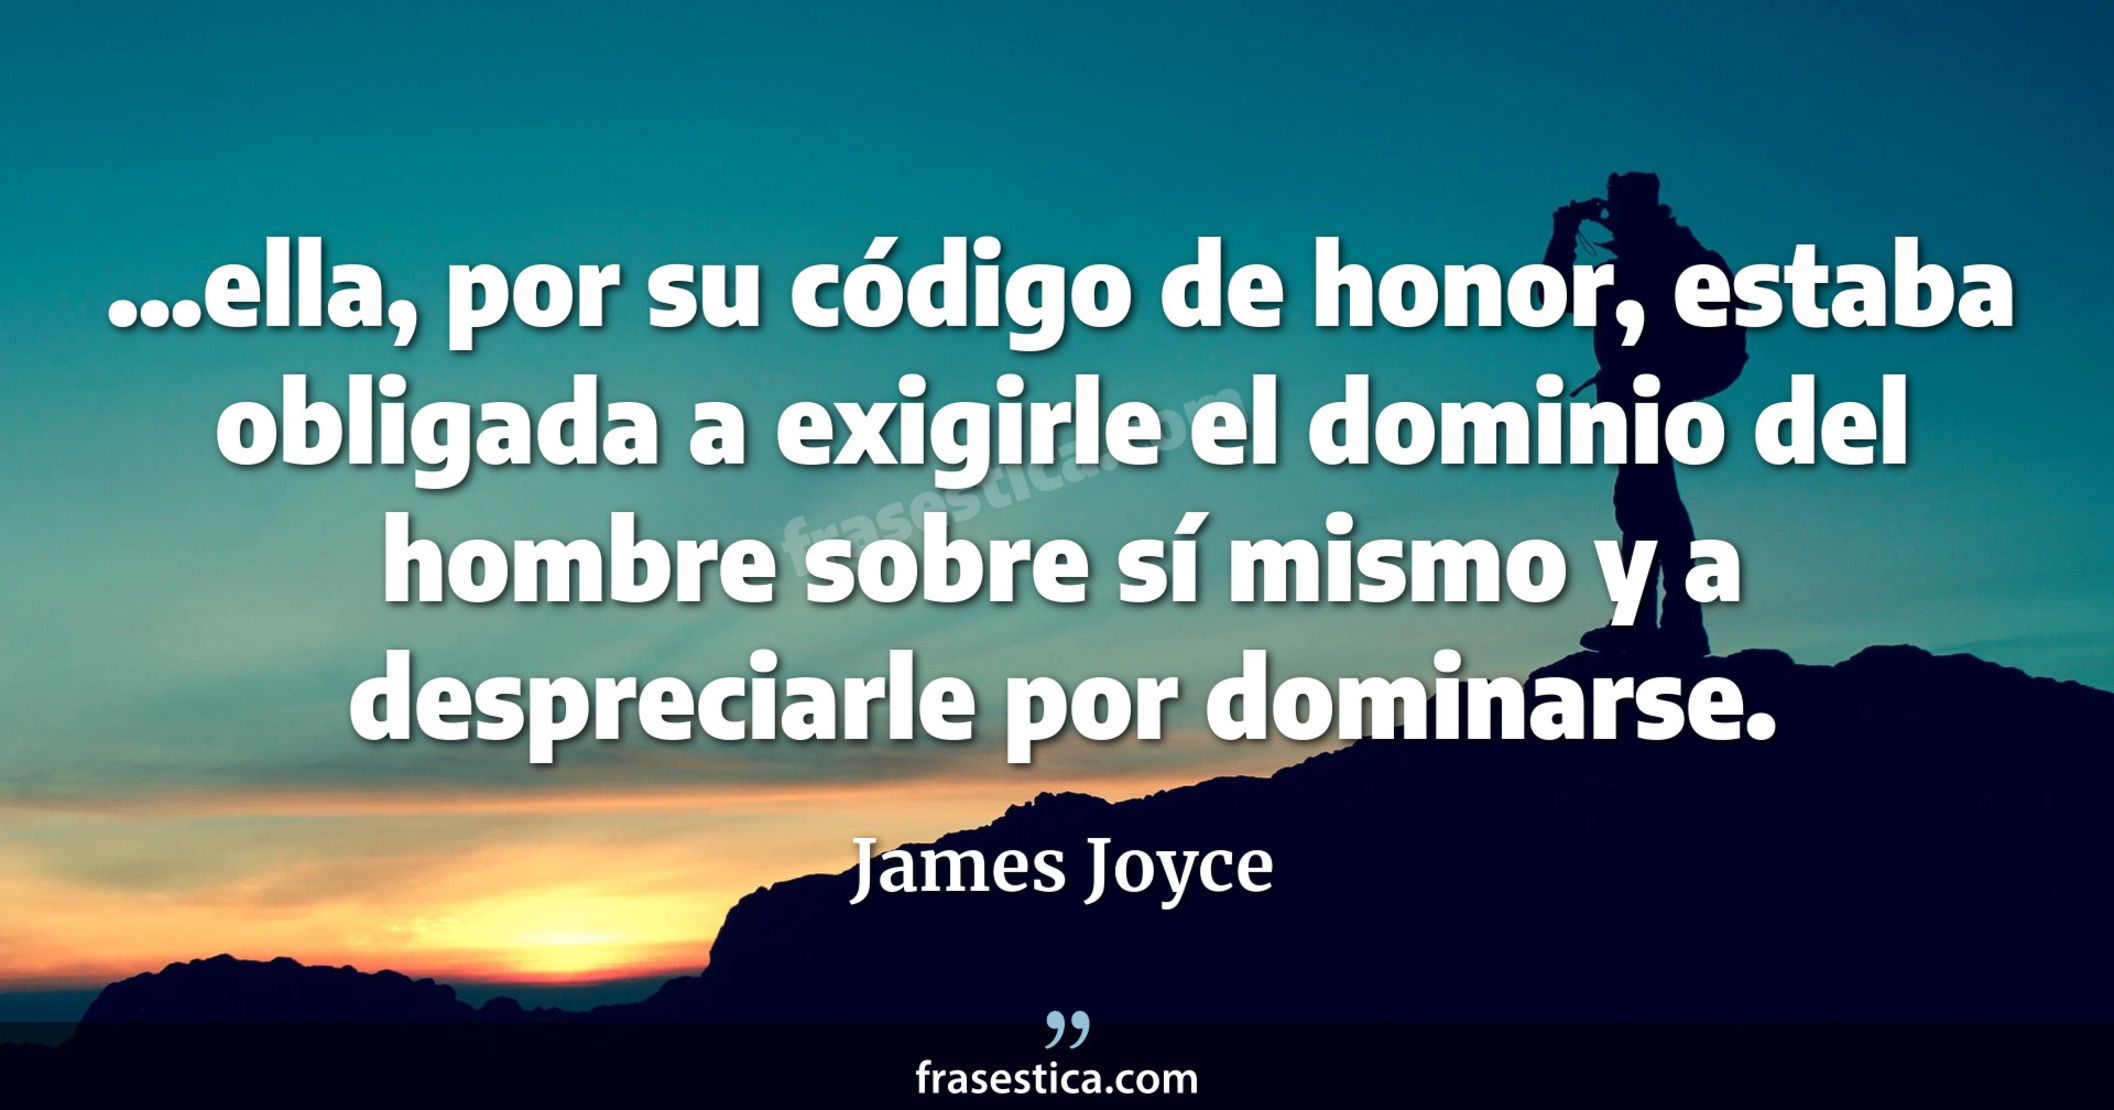 ...ella, por su código de honor, estaba obligada a exigirle el dominio del hombre sobre sí mismo y a despreciarle por dominarse. - James Joyce